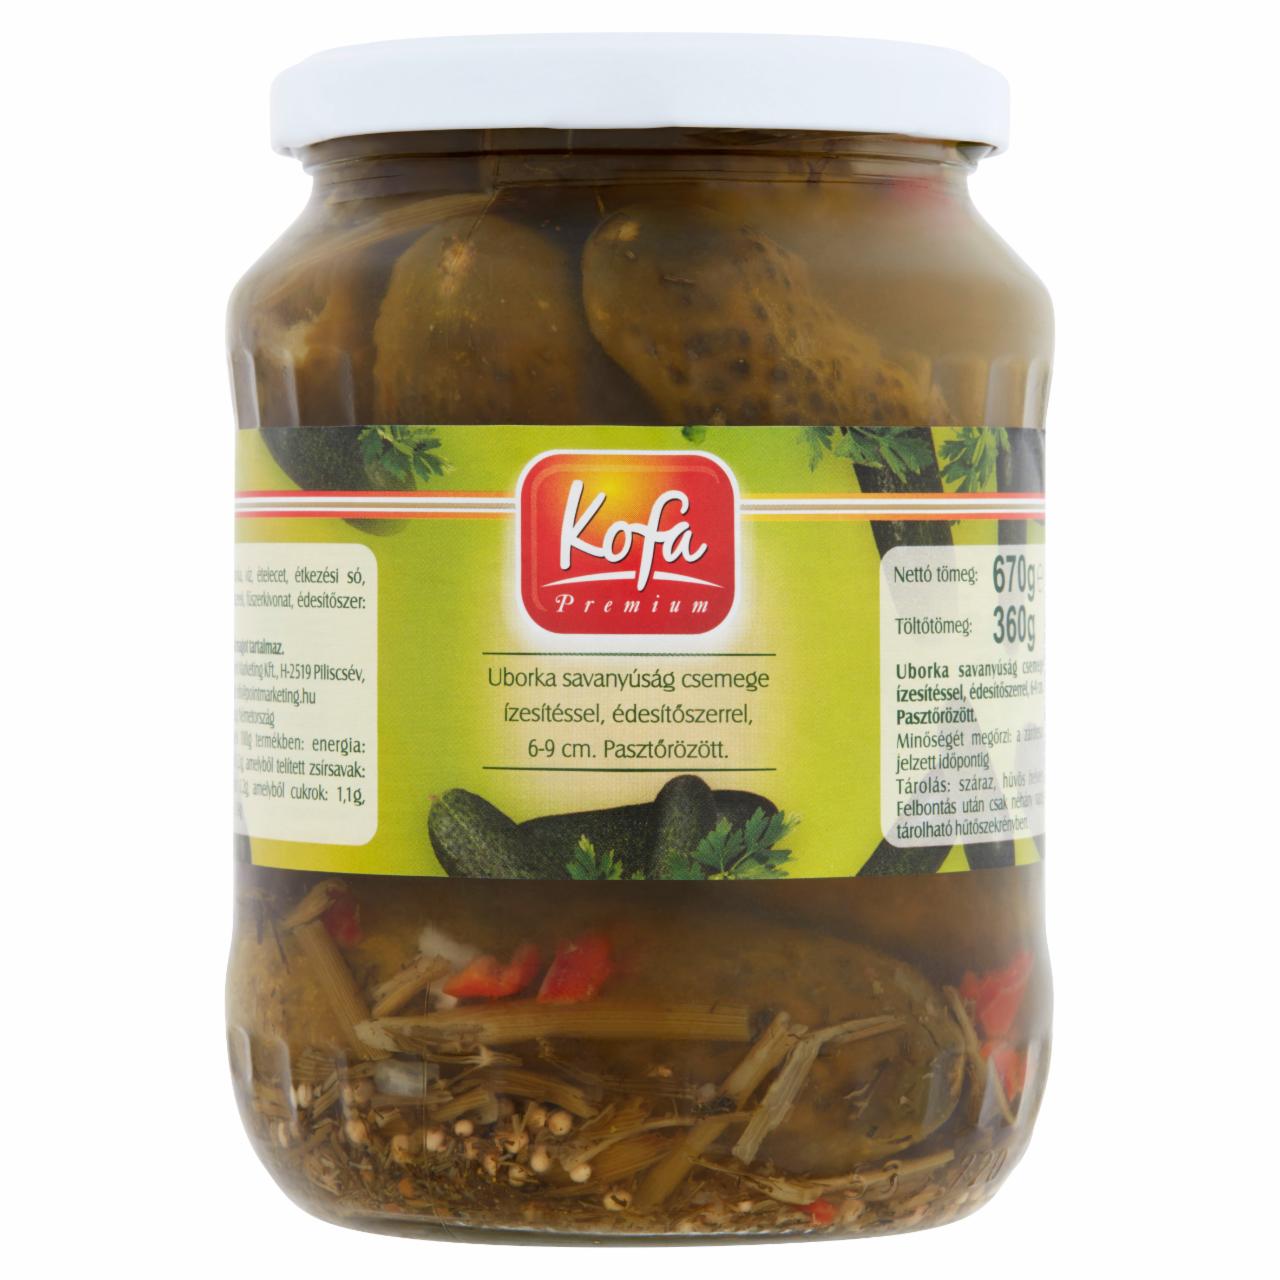 Képek - Kofa Premium uborka savanyúság csemege ízesítéssel, édesítőszerrel, 6-9 cm 670 g